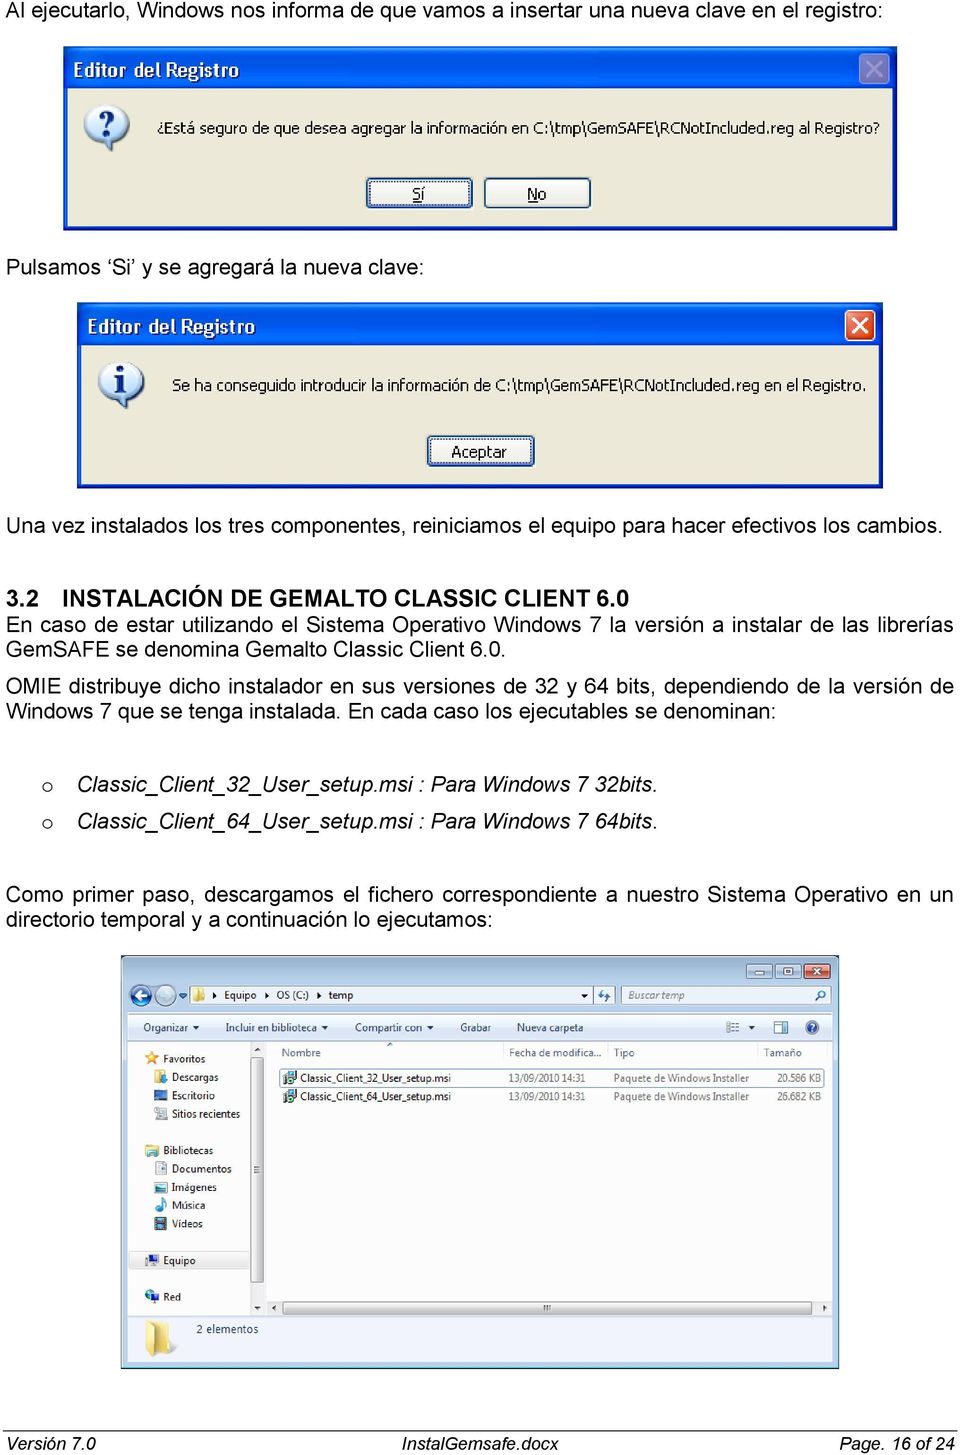 0 En caso de estar utilizando el Sistema Operativo Windows 7 la versión a instalar de las librerías GemSAFE se denomina Gemalto Classic Client 6.0. OMIE distribuye dicho instalador en sus versiones de 32 y 64 bits, dependiendo de la versión de Windows 7 que se tenga instalada.